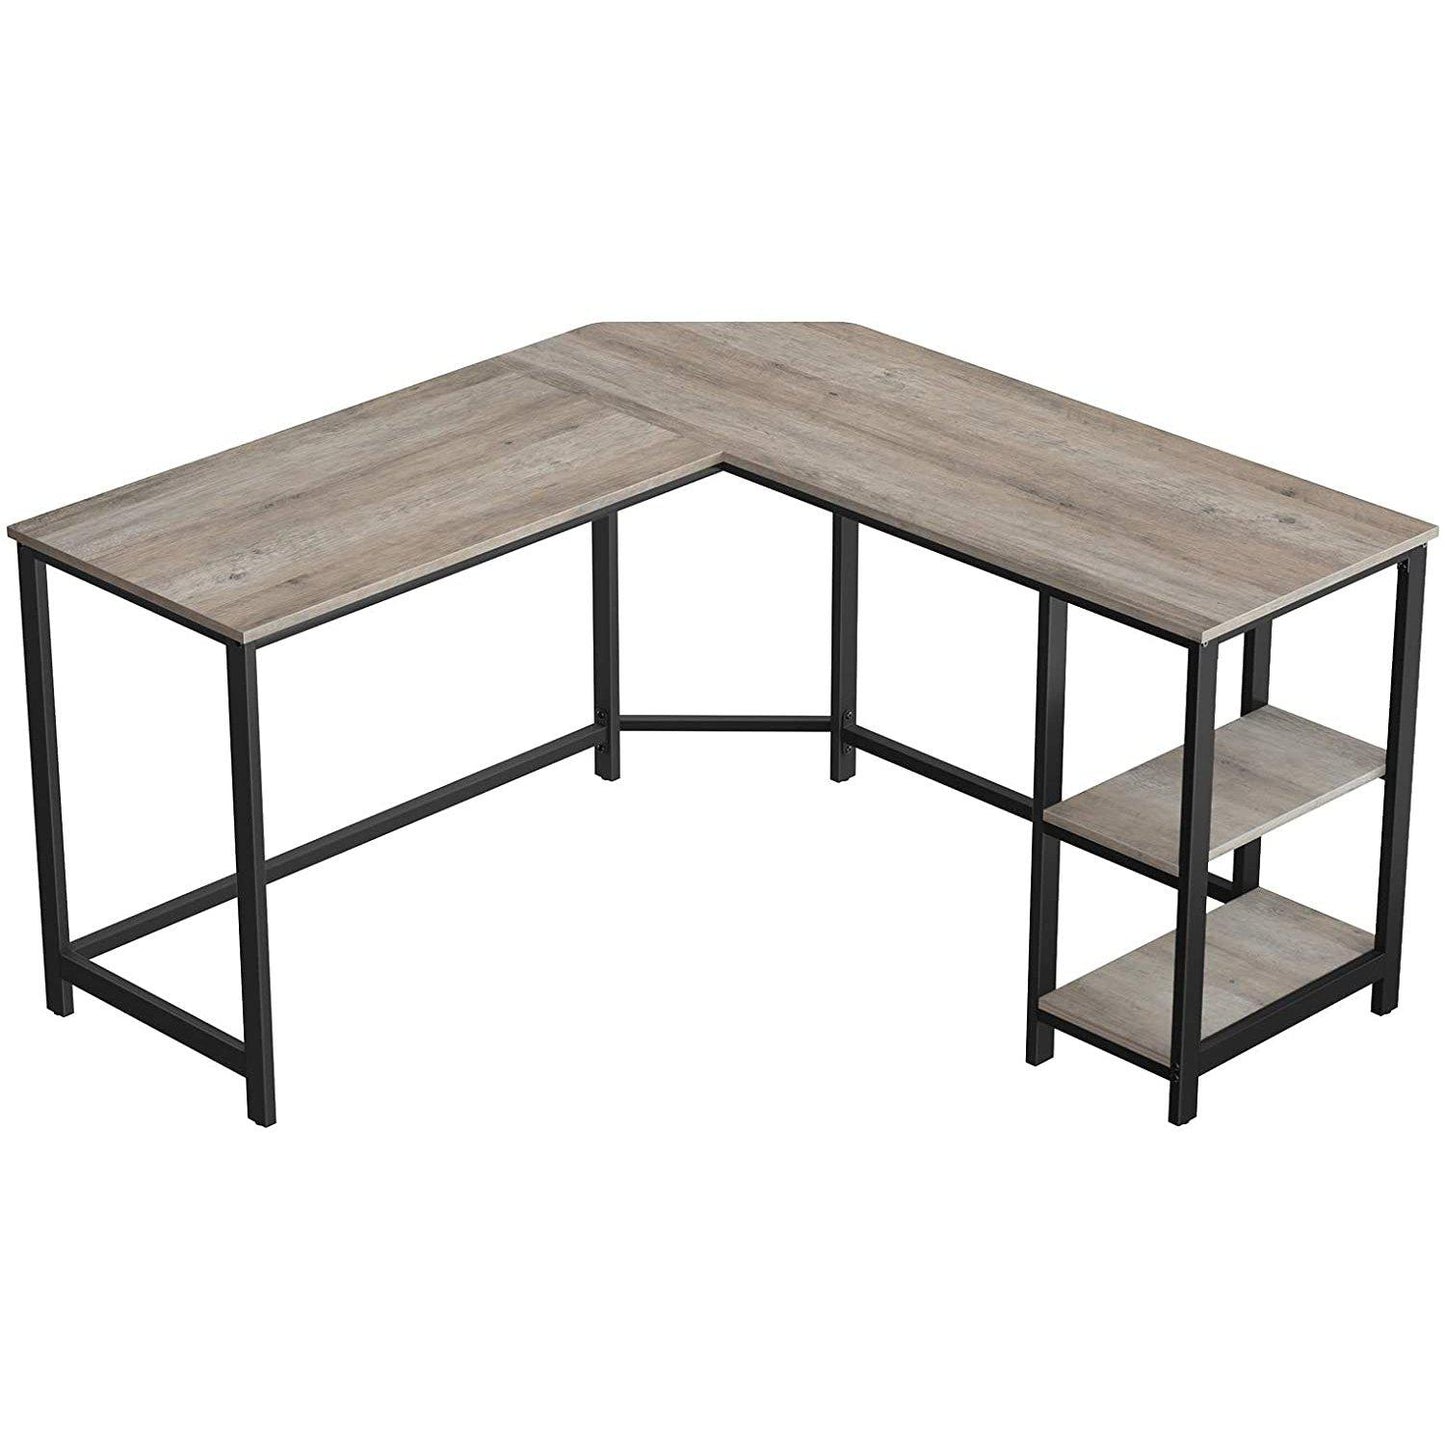 Nancy's Lenox Hill Desk - Table de travail - Table de bureau - Bureaux - Gris/Noir - 138 x 138 x 75 cm